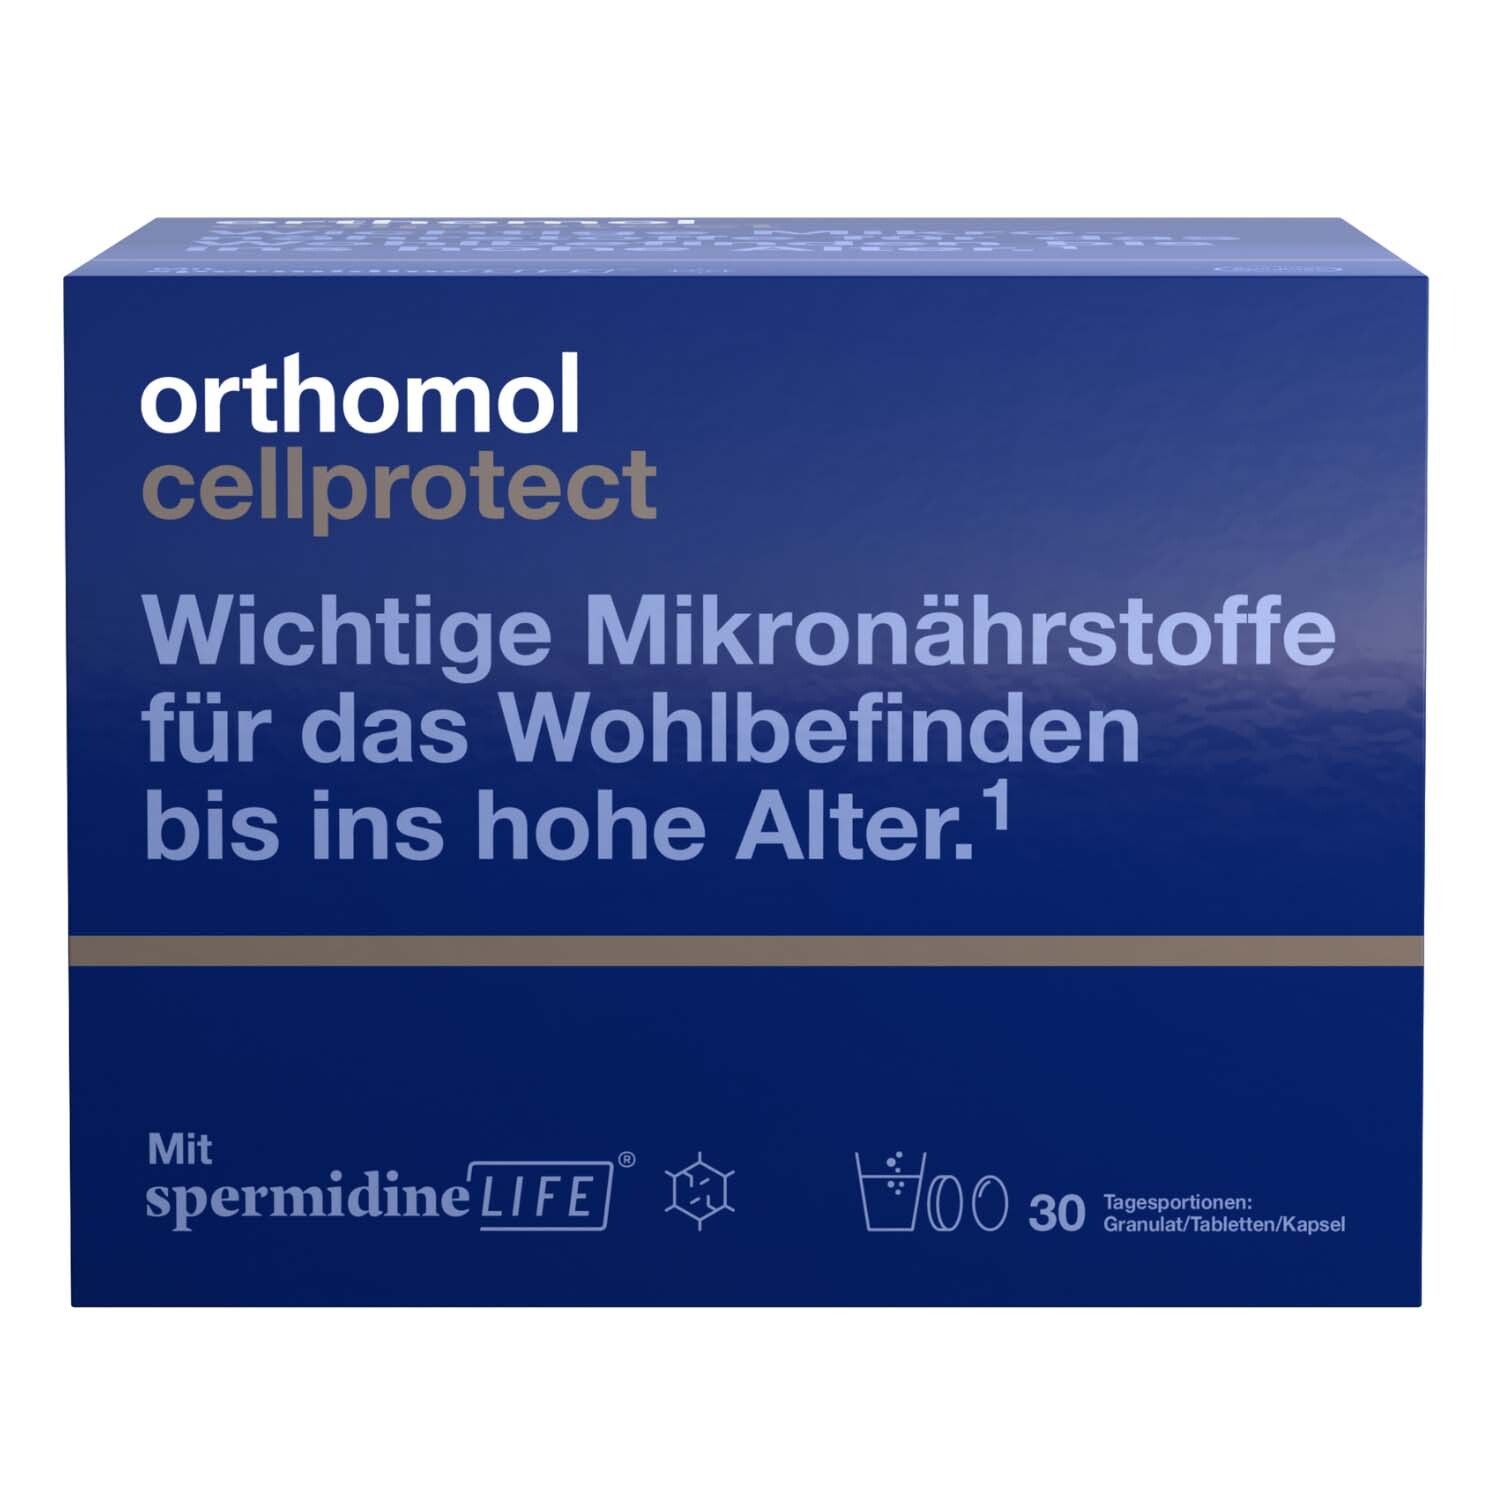 Orthomol Cellprotect Contient des micronutriments importants. Avec spermidine.